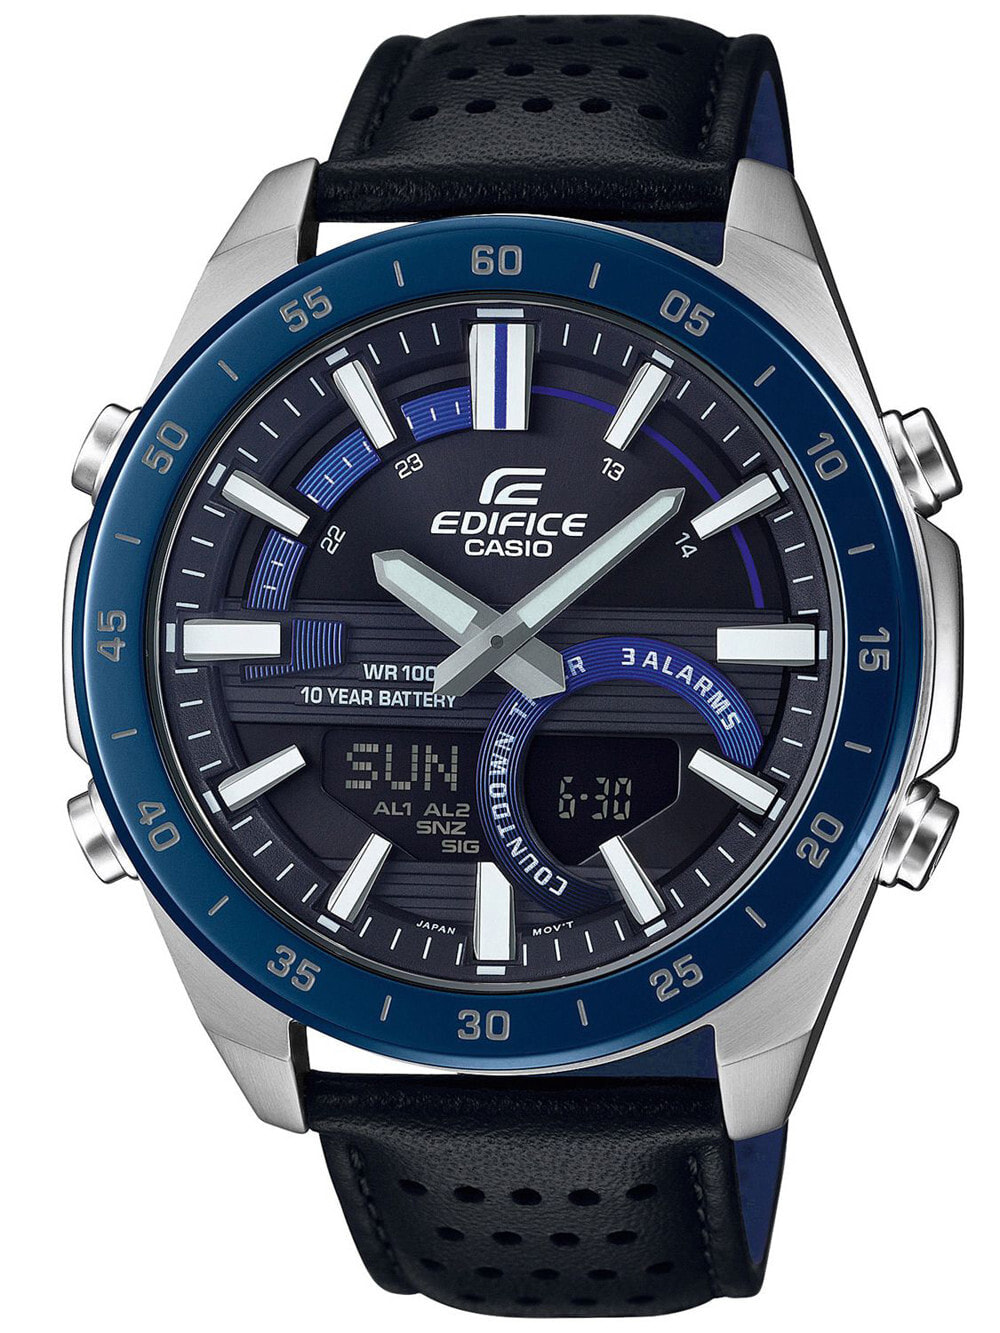 Мужские наручные часы с синим кожаным ремешком Casio ERA-120BL-2AVEF Edifice analogue/digital Chronograph 47mm